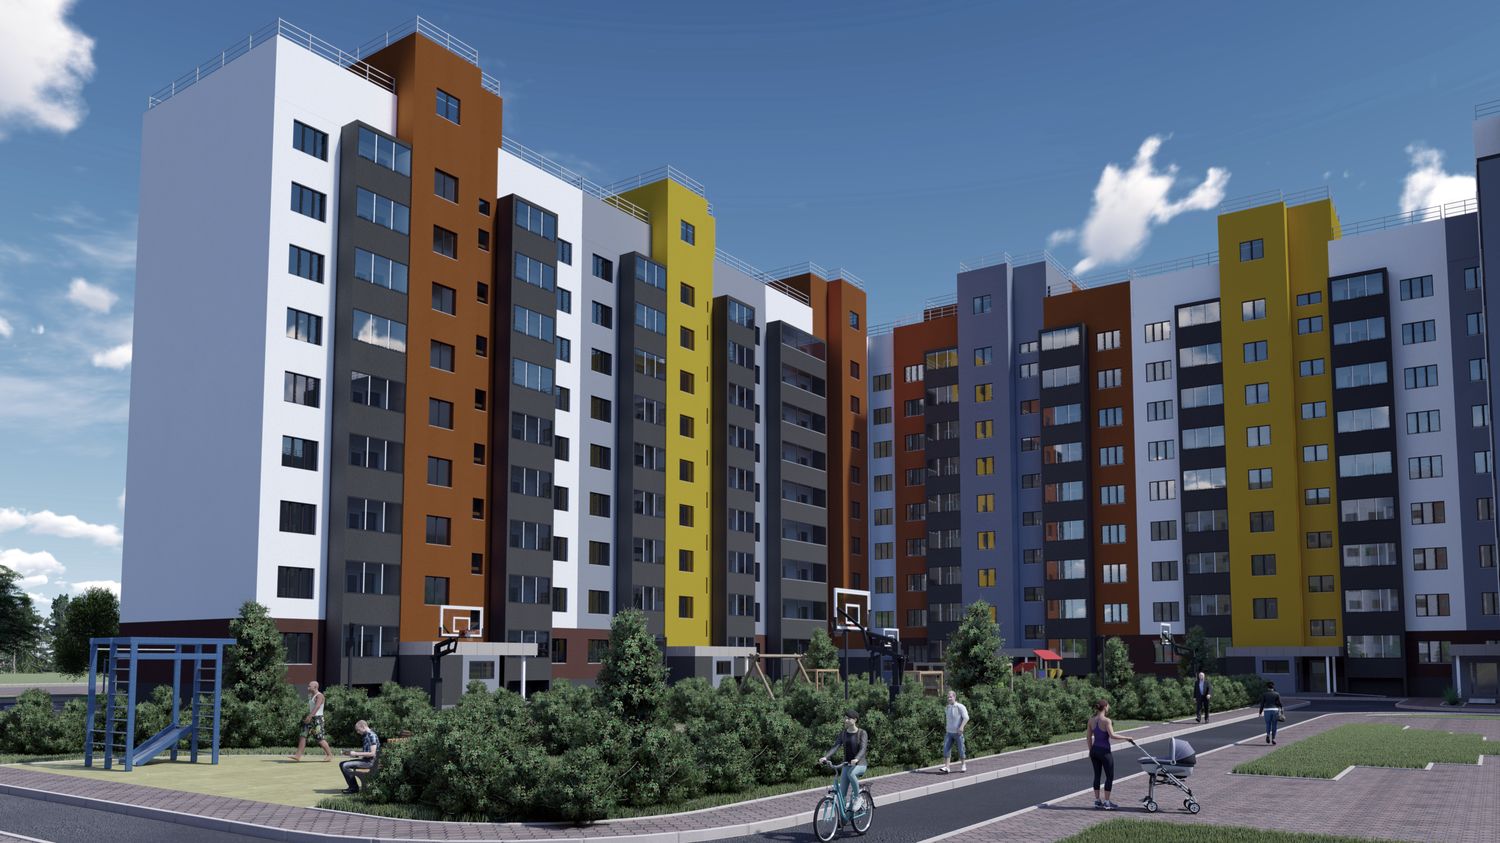 Принципиально “Новый город”: жилой комплекс комфорт-класса строится в Канавинском районе 12345678 - фото 1